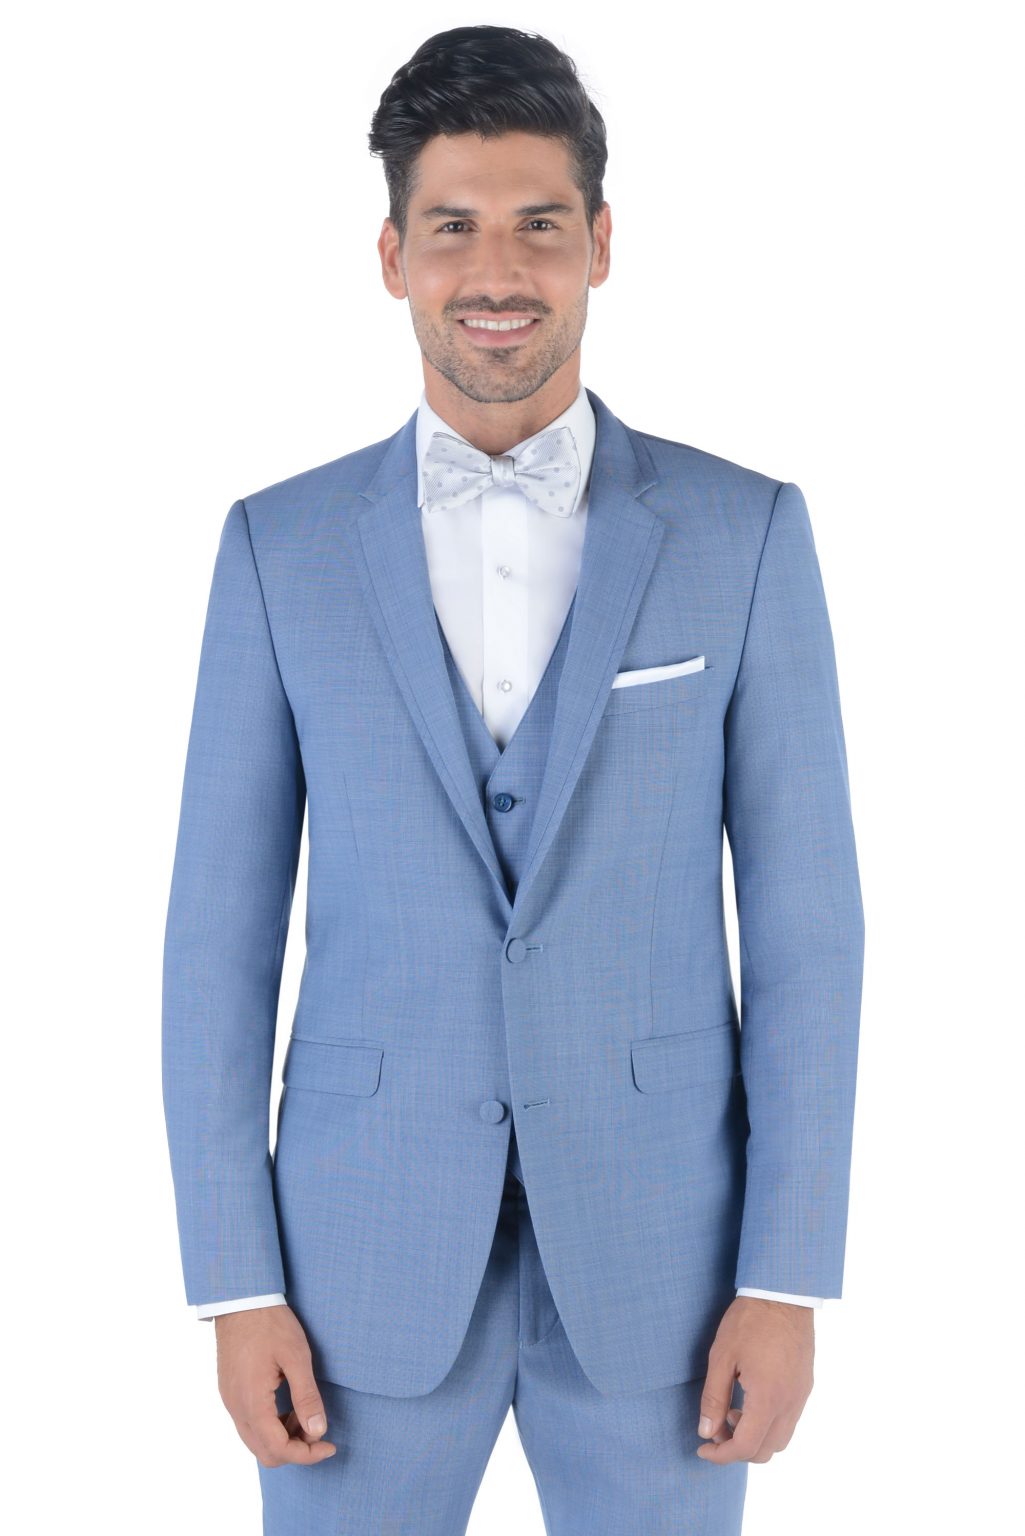 All Men's Tuxedo & Suit Rental Styles | Savvi Formalwear